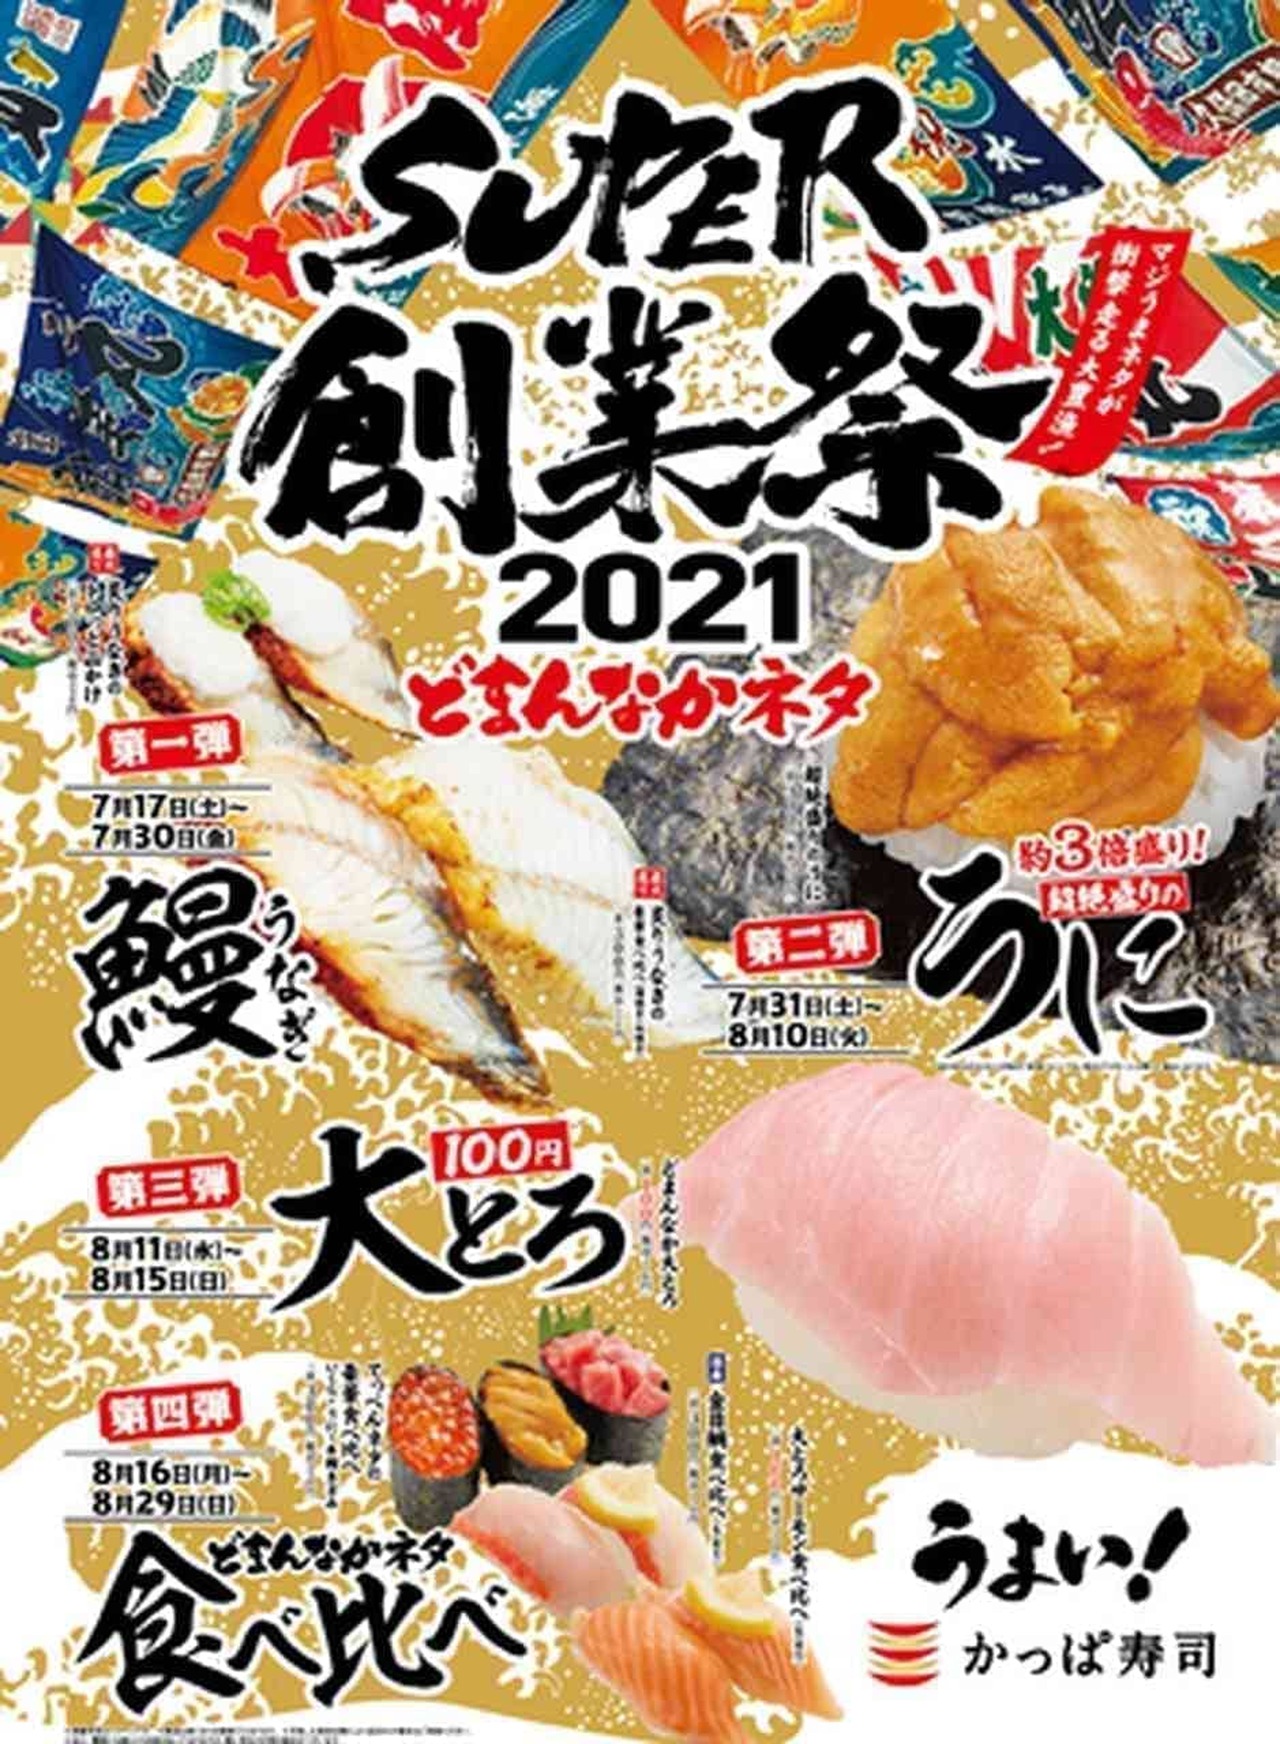 かっぱ寿司「SUPER創業祭2021」